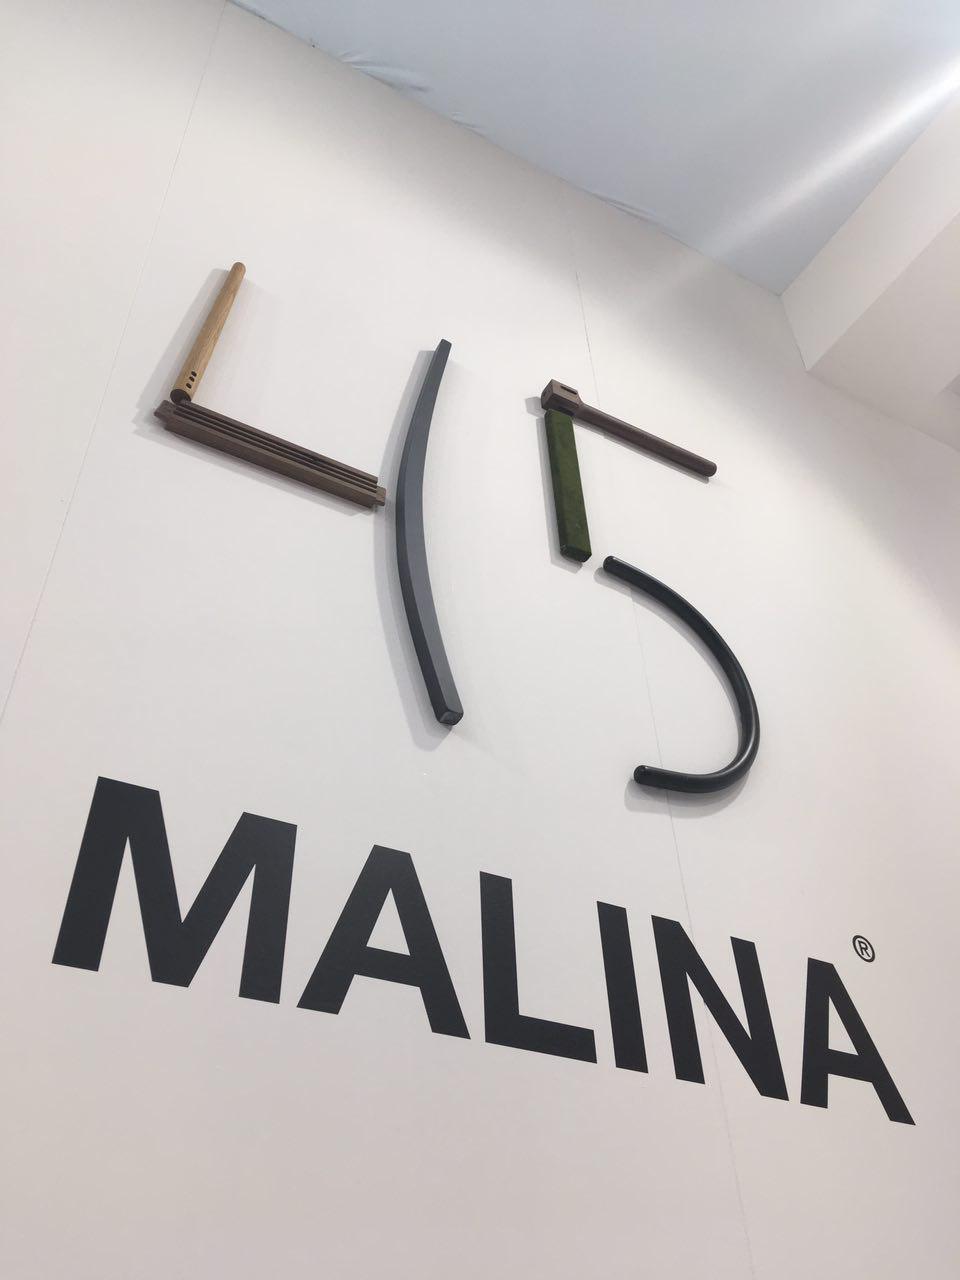 Stand Malina Salone del Mobile 2018 Henry&Co. Design